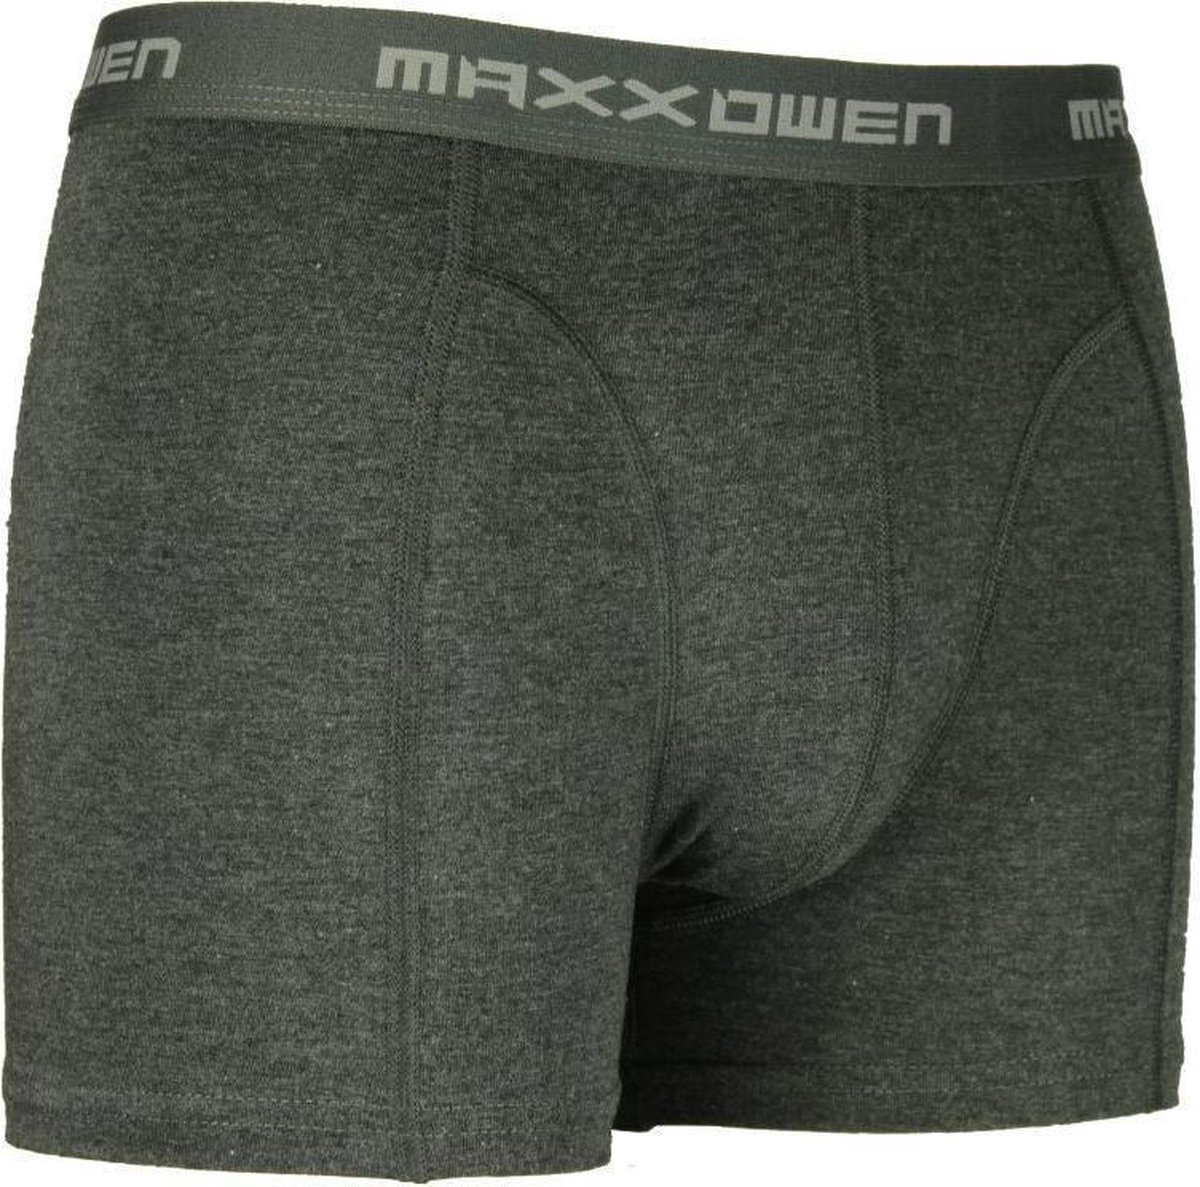 5 pack Maxx Owen Katoenen Boxershorts Antraciet Maat XL